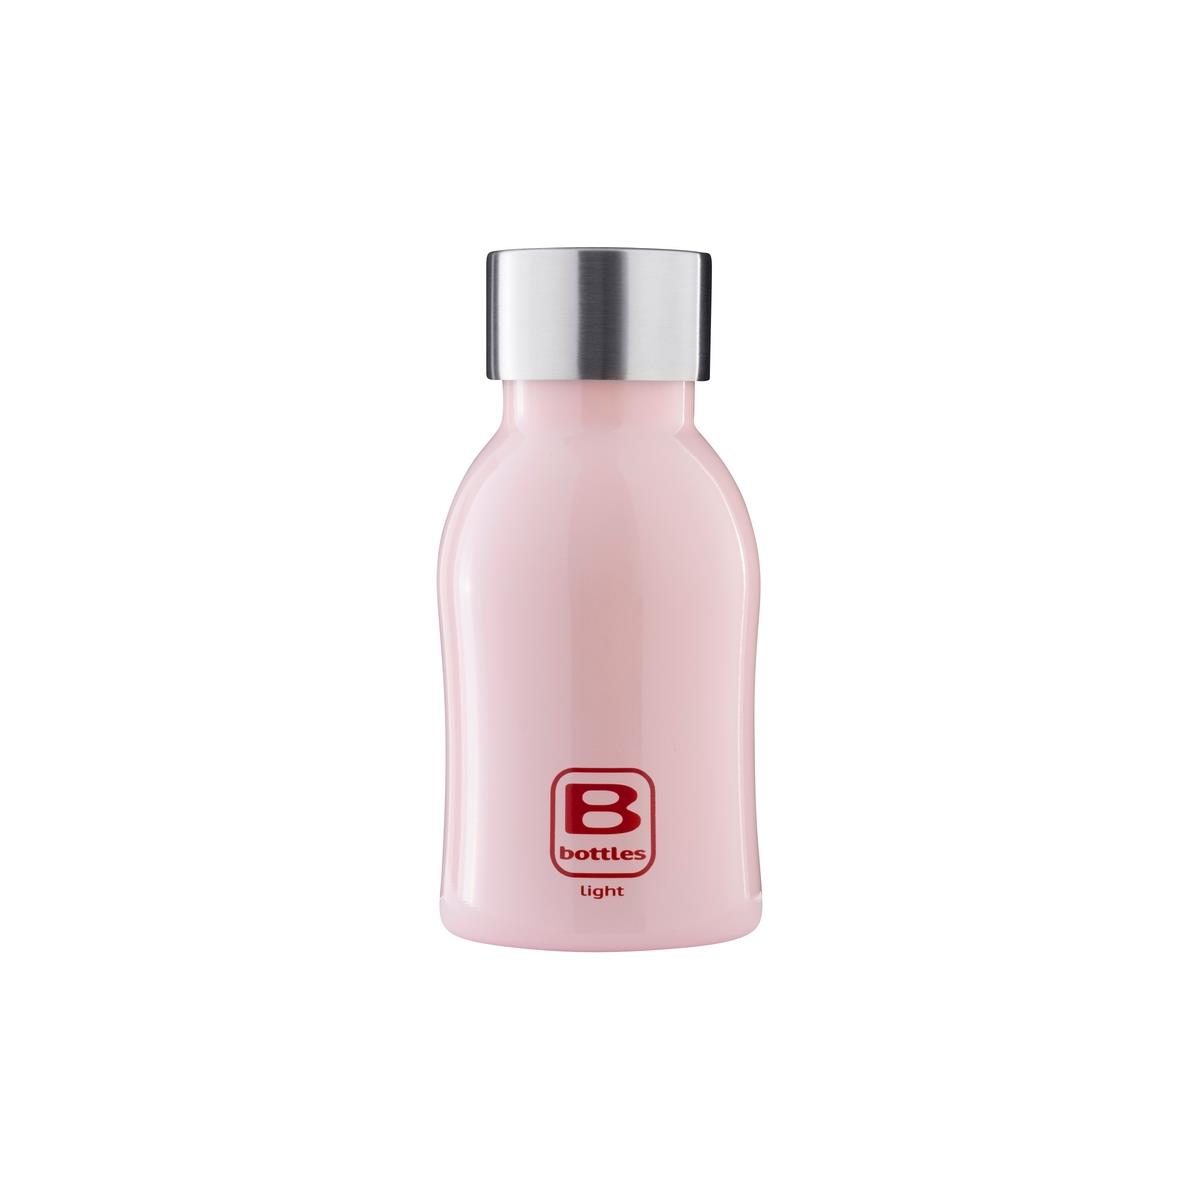 photo B Bottles Light - Pink - 350 ml - Ultraleichte und kompakte Flasche aus 18/10-Edelstahl